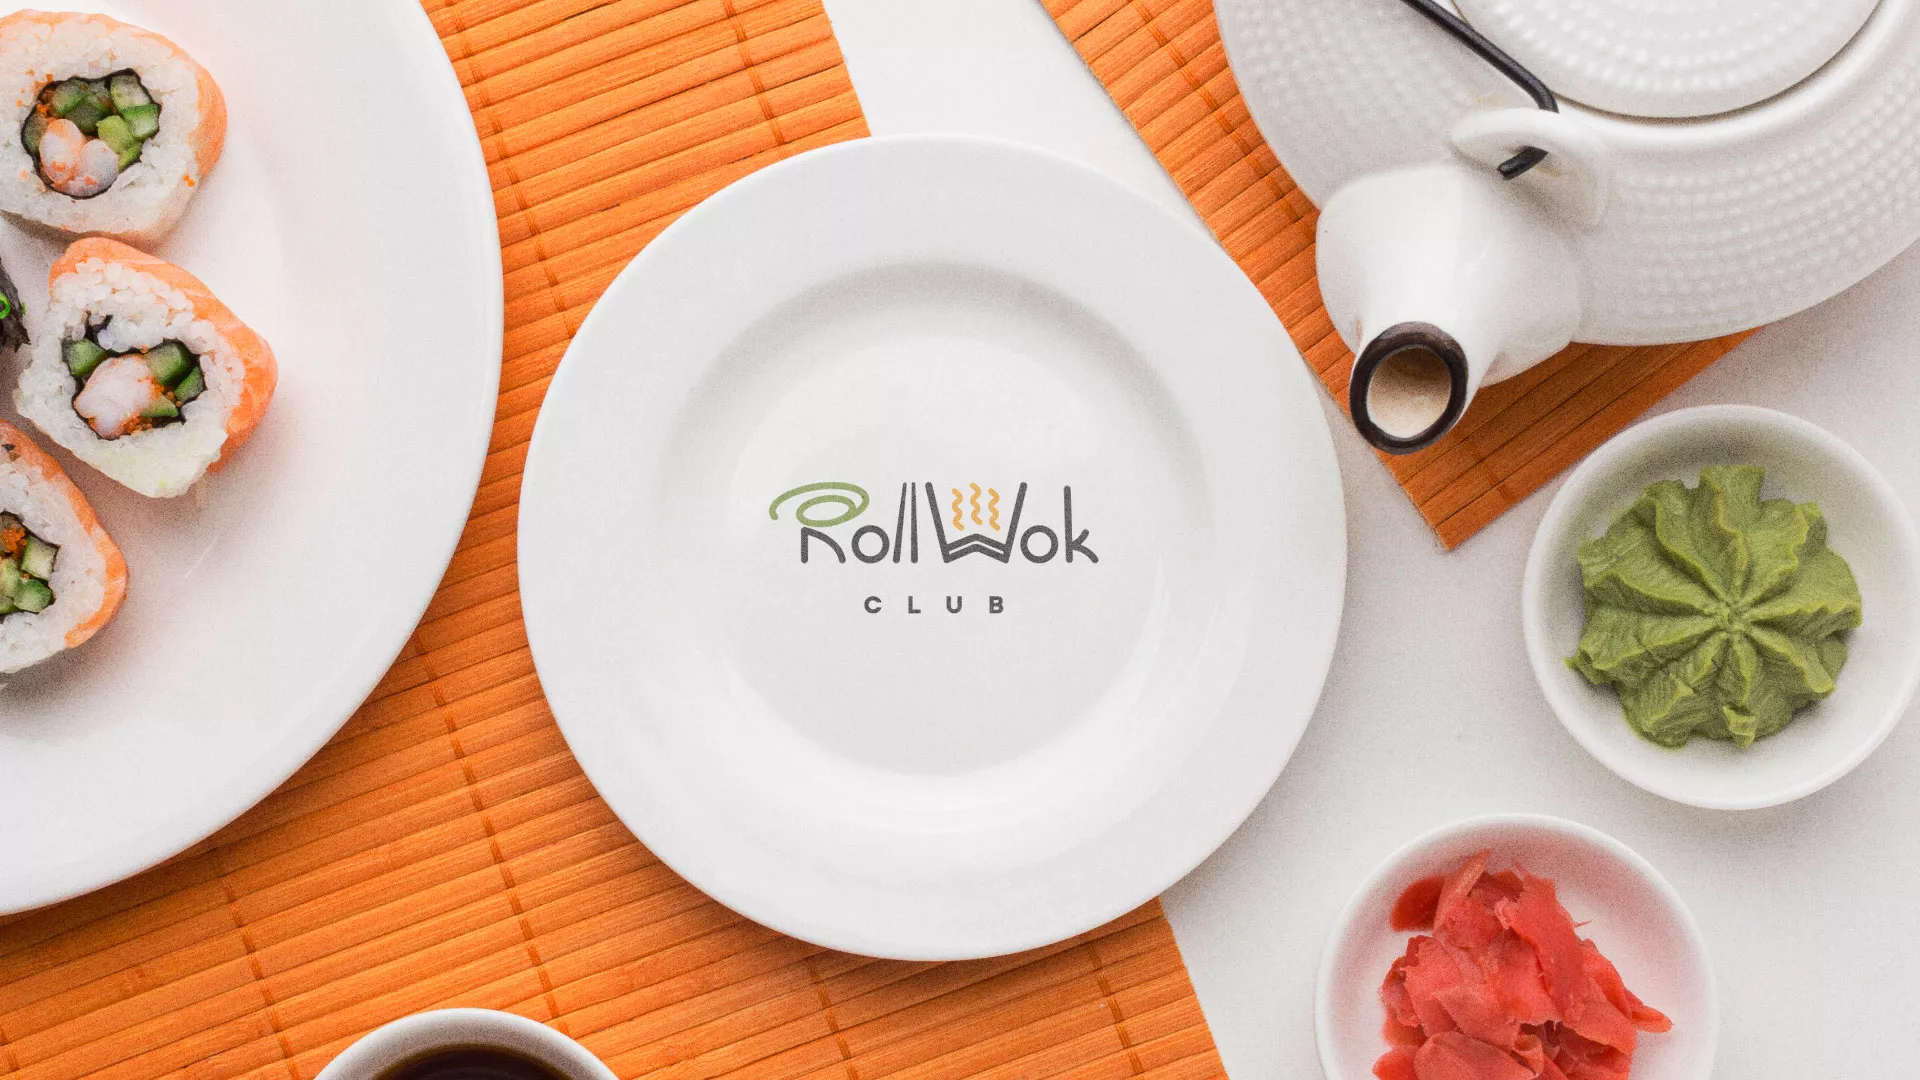 Разработка логотипа и фирменного стиля суши-бара «Roll Wok Club» в Людиново